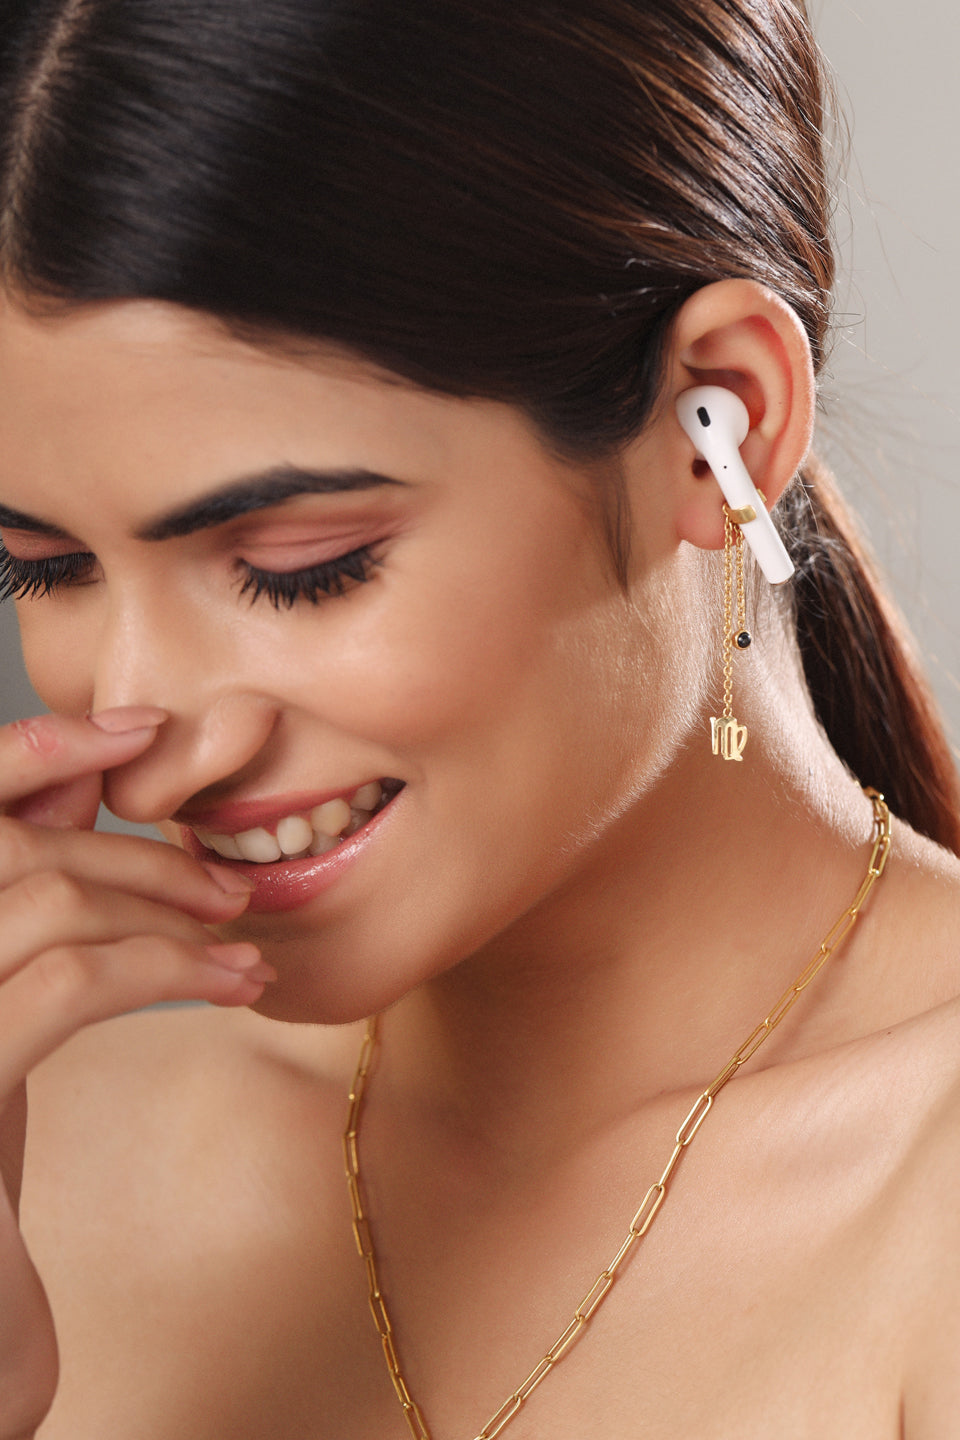 Virgo charm airpods earrings